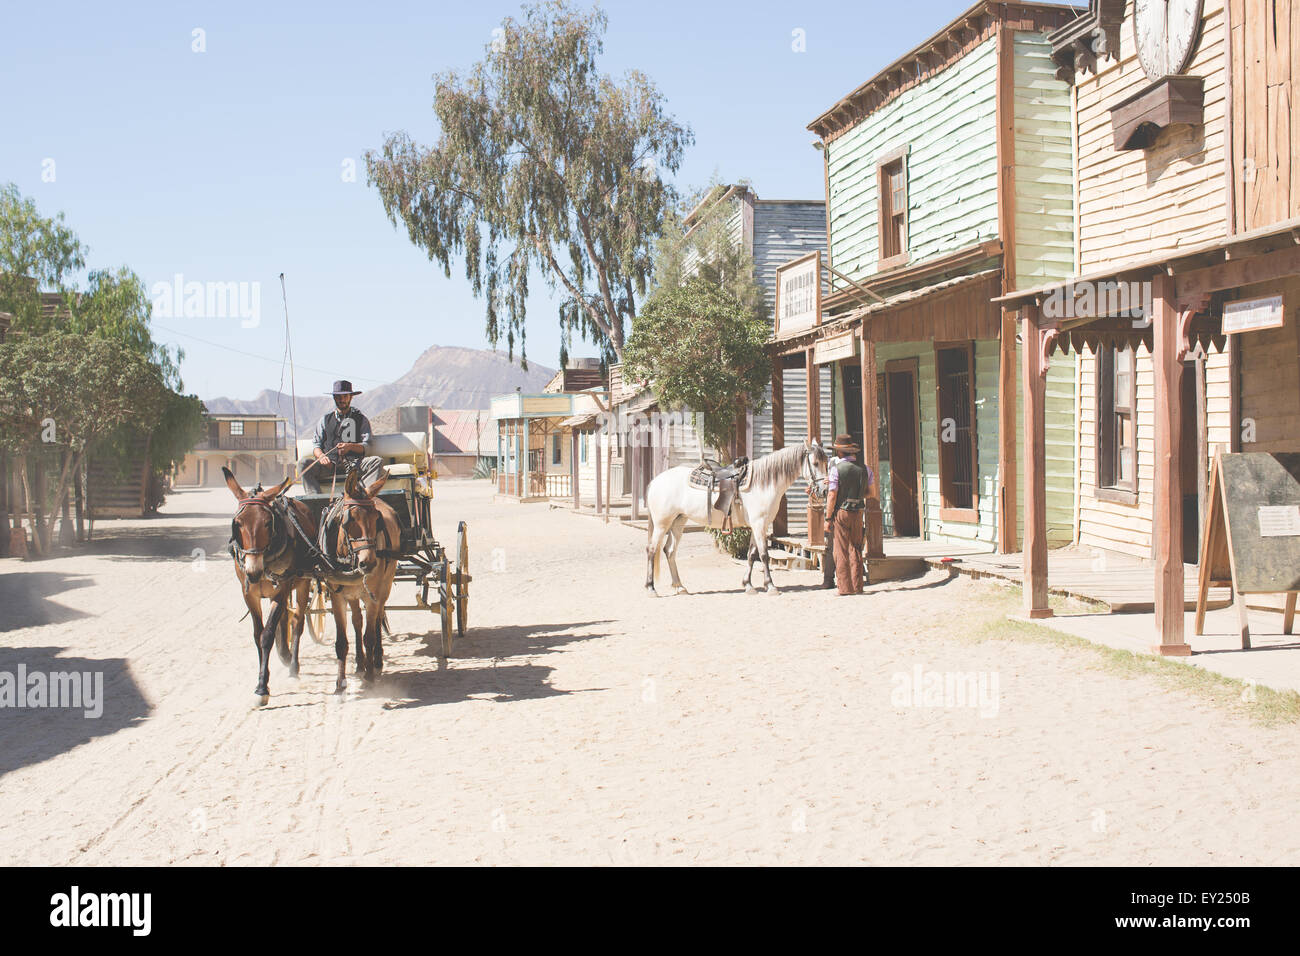 Cowboy und Maultier Wagen auf Wild-West-Film eingestellt, Fort Bravo, Tabernas, Almeria, Spanien Stockfoto